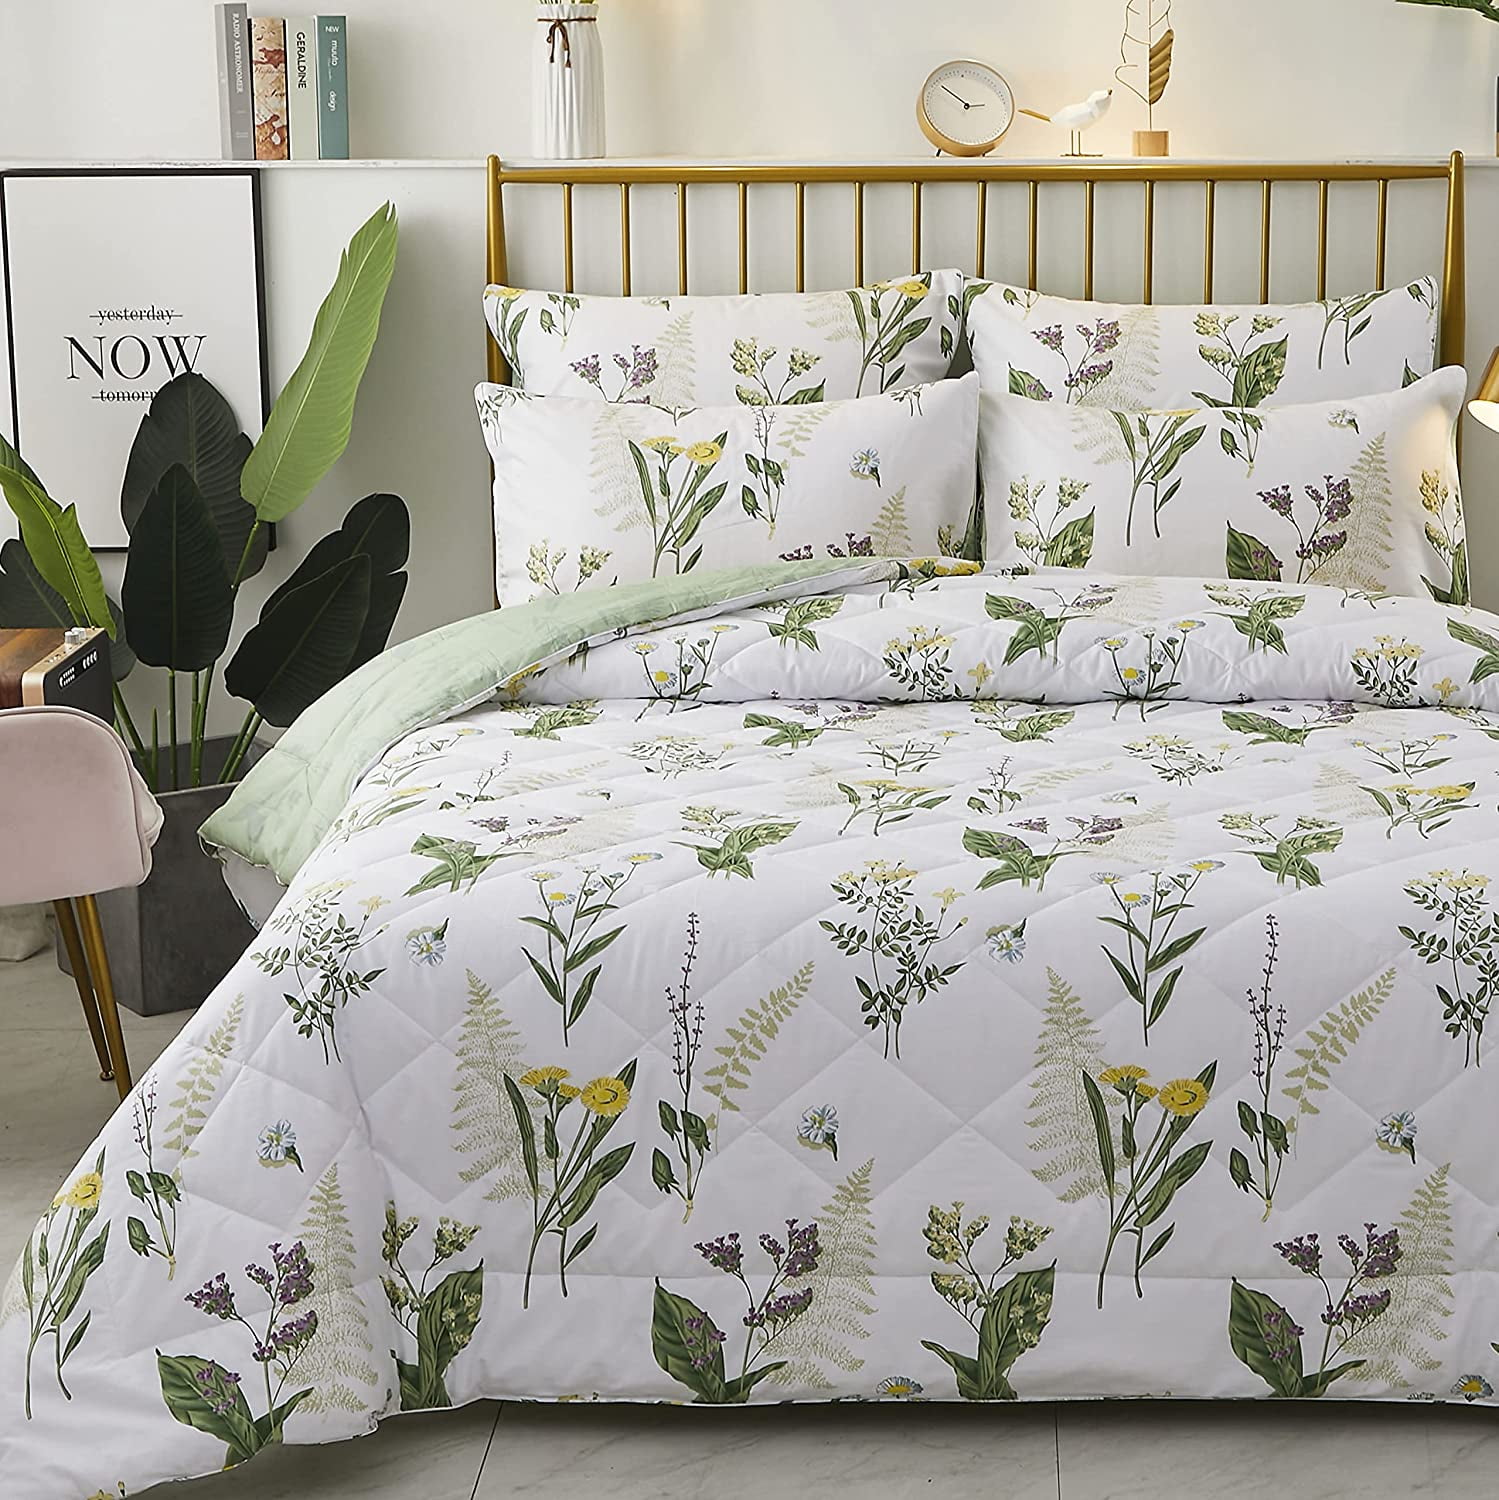 Reversible Botanical Flowers Leaf Printed Bedding Do Floral Comforter Set Queen 